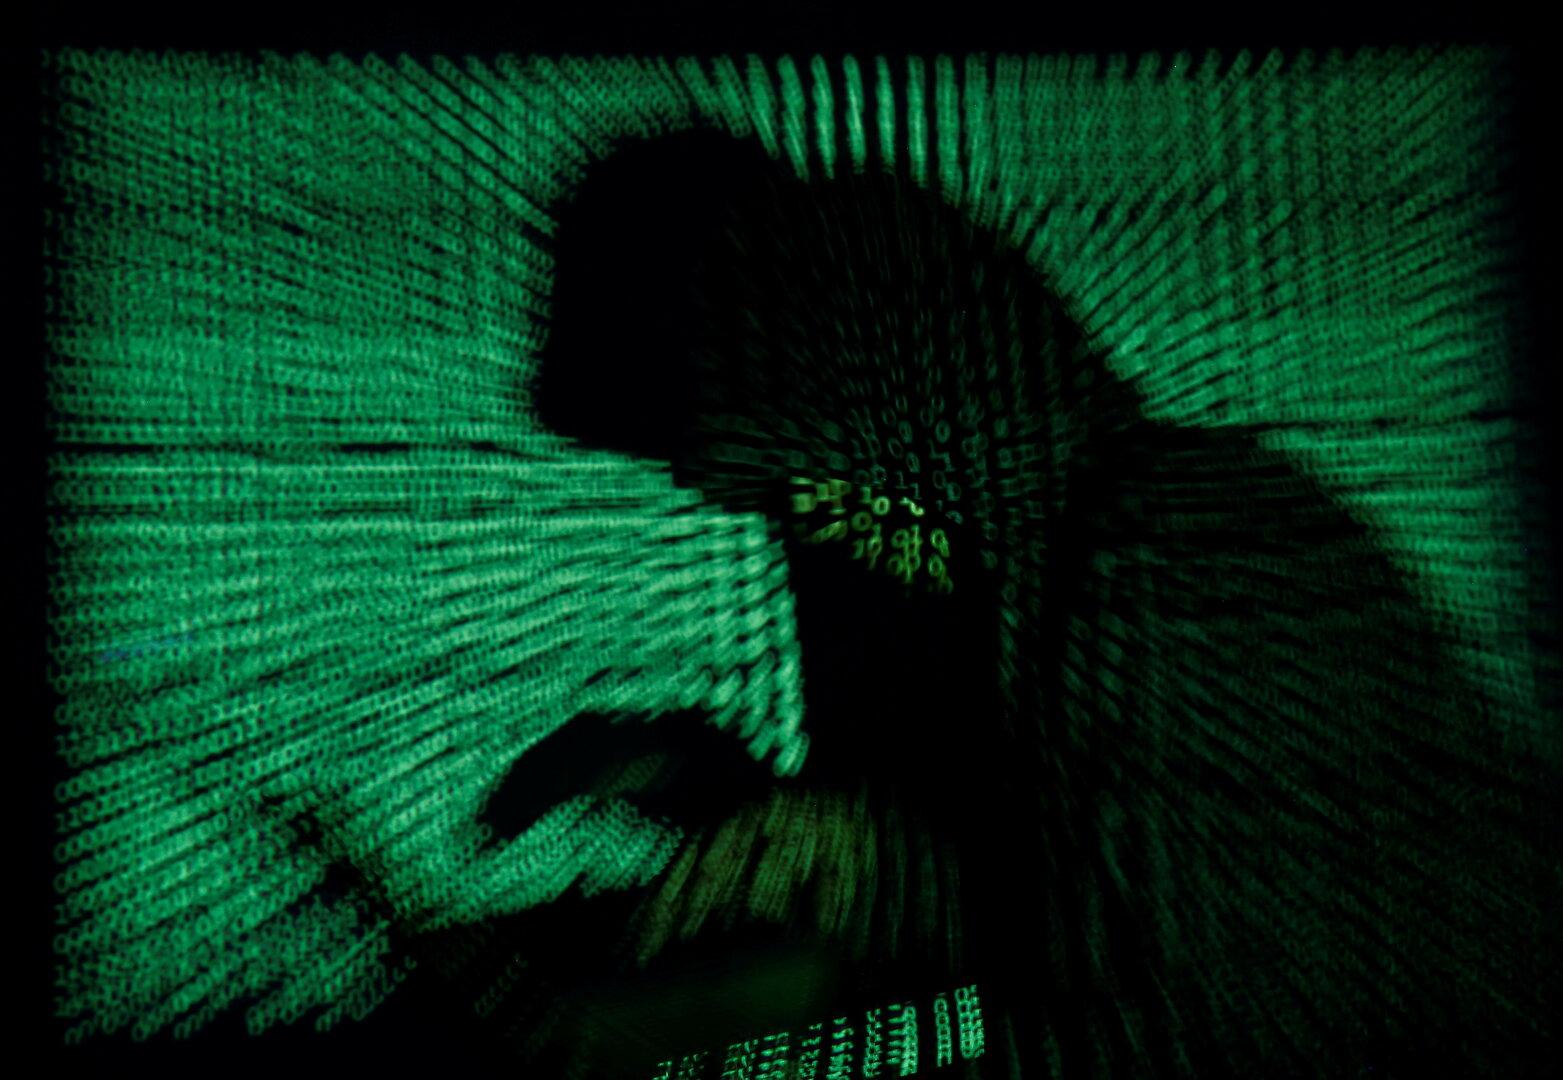 "Erschreckend": Europas Industrie ist schlecht auf Cyberattacken vorbereitet